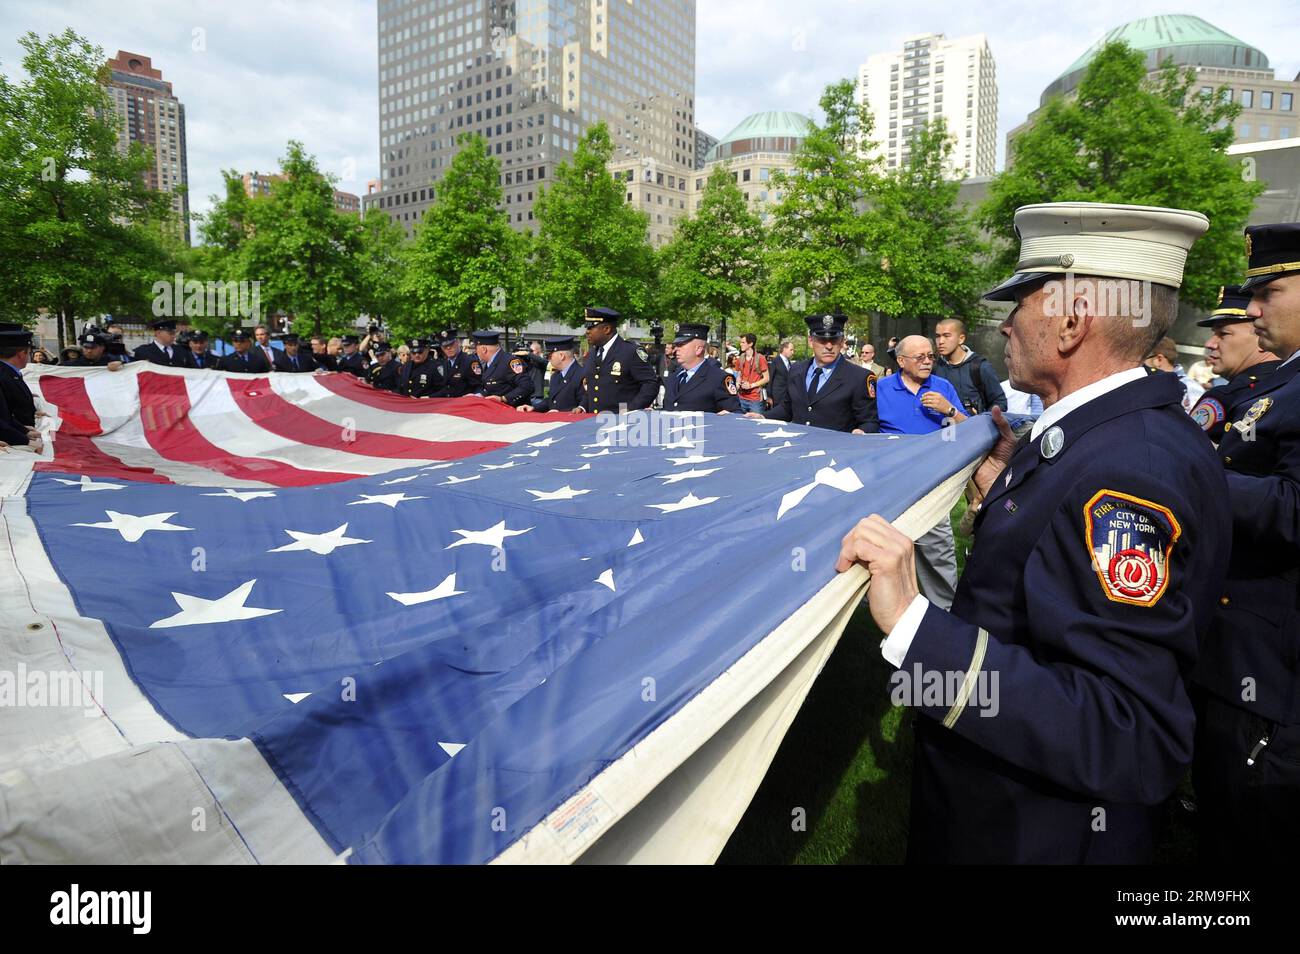 (140521) -- NEW YORK, 21 maggio 2014 (Xinhua) -- i vigili del fuoco, la polizia e i membri dell'esercito tengono la National 9/11 Flag davanti al National September 11 Memorial Museum di New York, Stati Uniti, 21 maggio 2014. Il museo commemorativo di mercoledì è stato aperto al pubblico dopo un trasferimento cerimoniale della National 9/11 Flag, una bandiera americana che aveva volato al 90 di West Street, adiacente a Ground Zero, per settimane dopo gli attacchi, nella collezione permanente del museo. (Xinhua/Wang lei) US-NEW YORK-SEPT. 11 MEMORIAL MUSEUM - APERTURA AL PUBBLICO PUBLICATIONxNOTxINxCHN New York 21 maggio Foto Stock